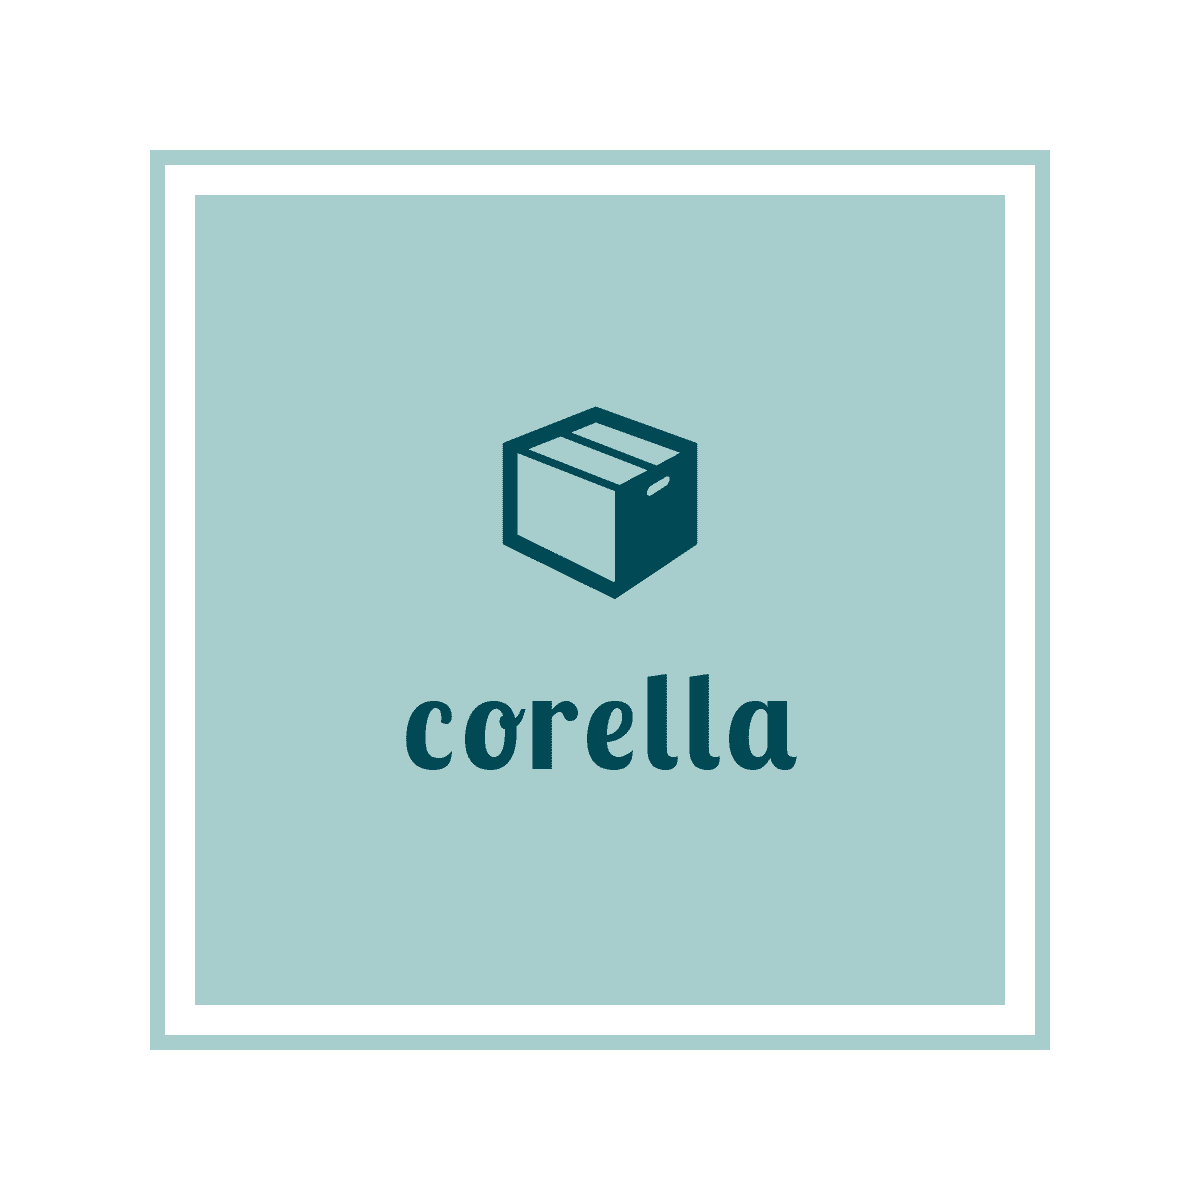 corella